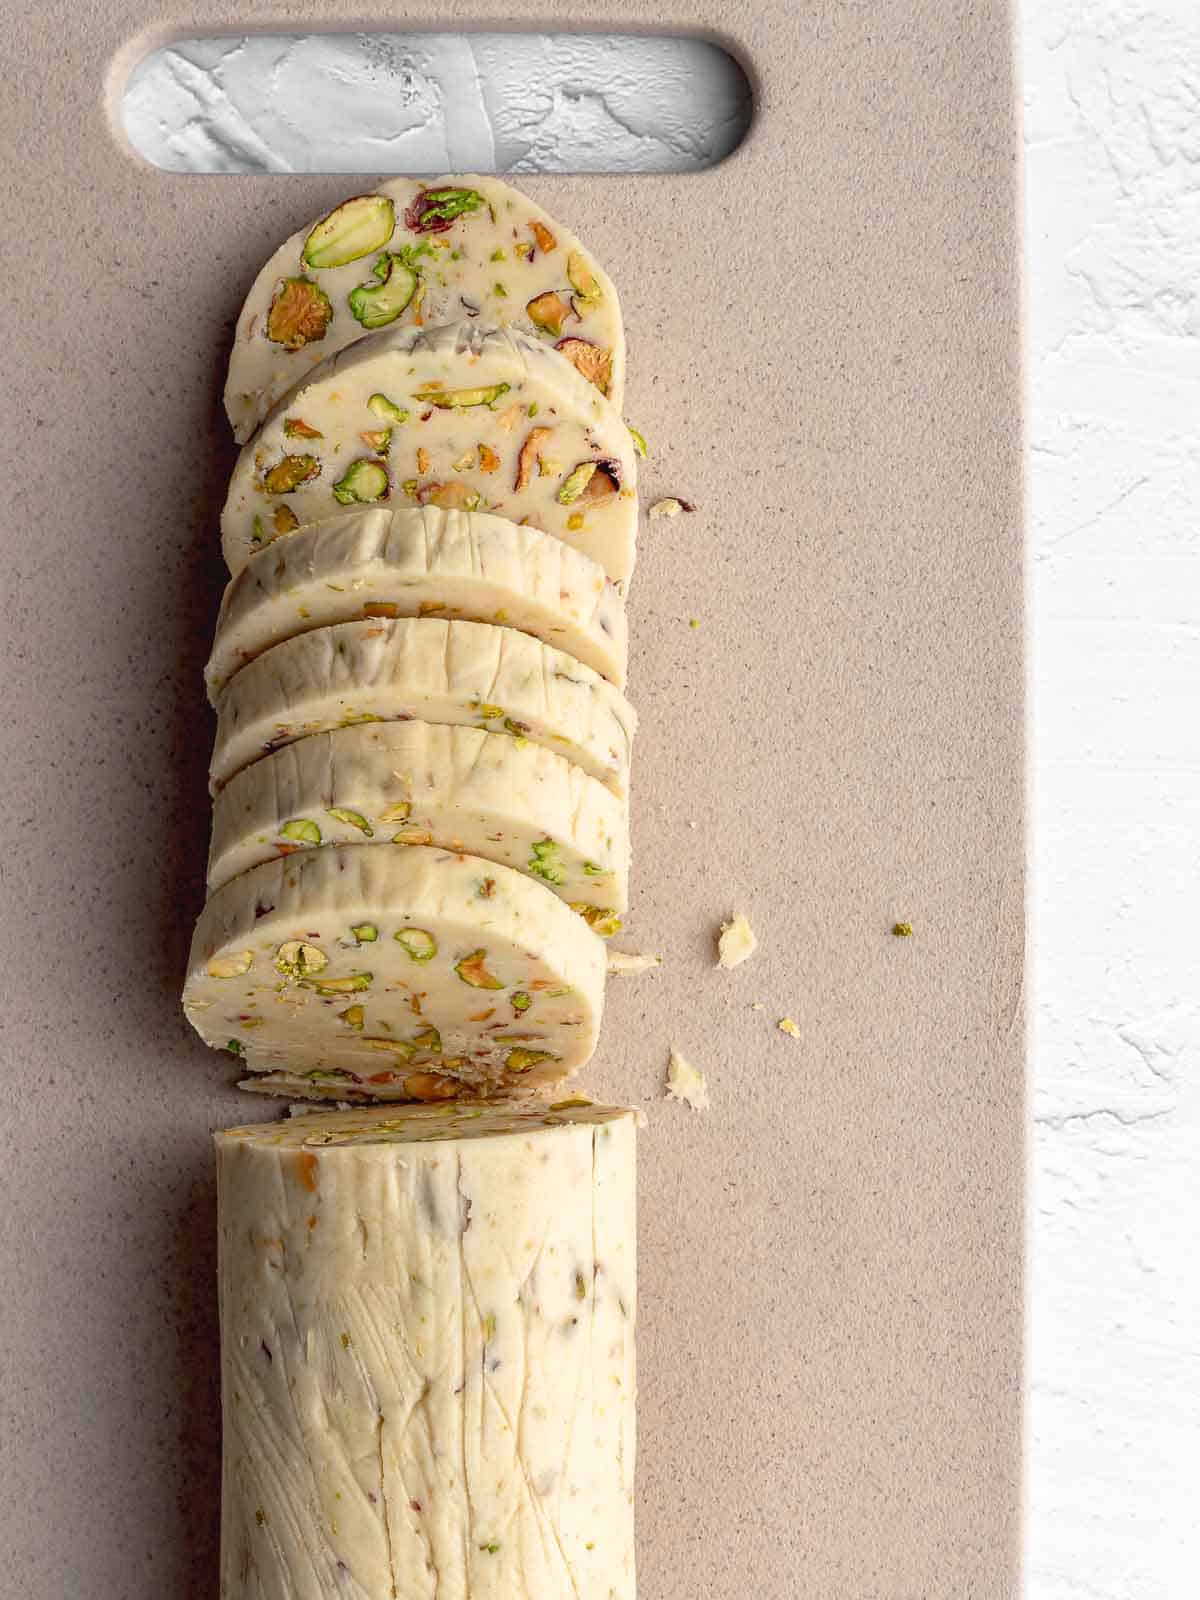 A log of pistachio shortbread cookie dough cut into slices.